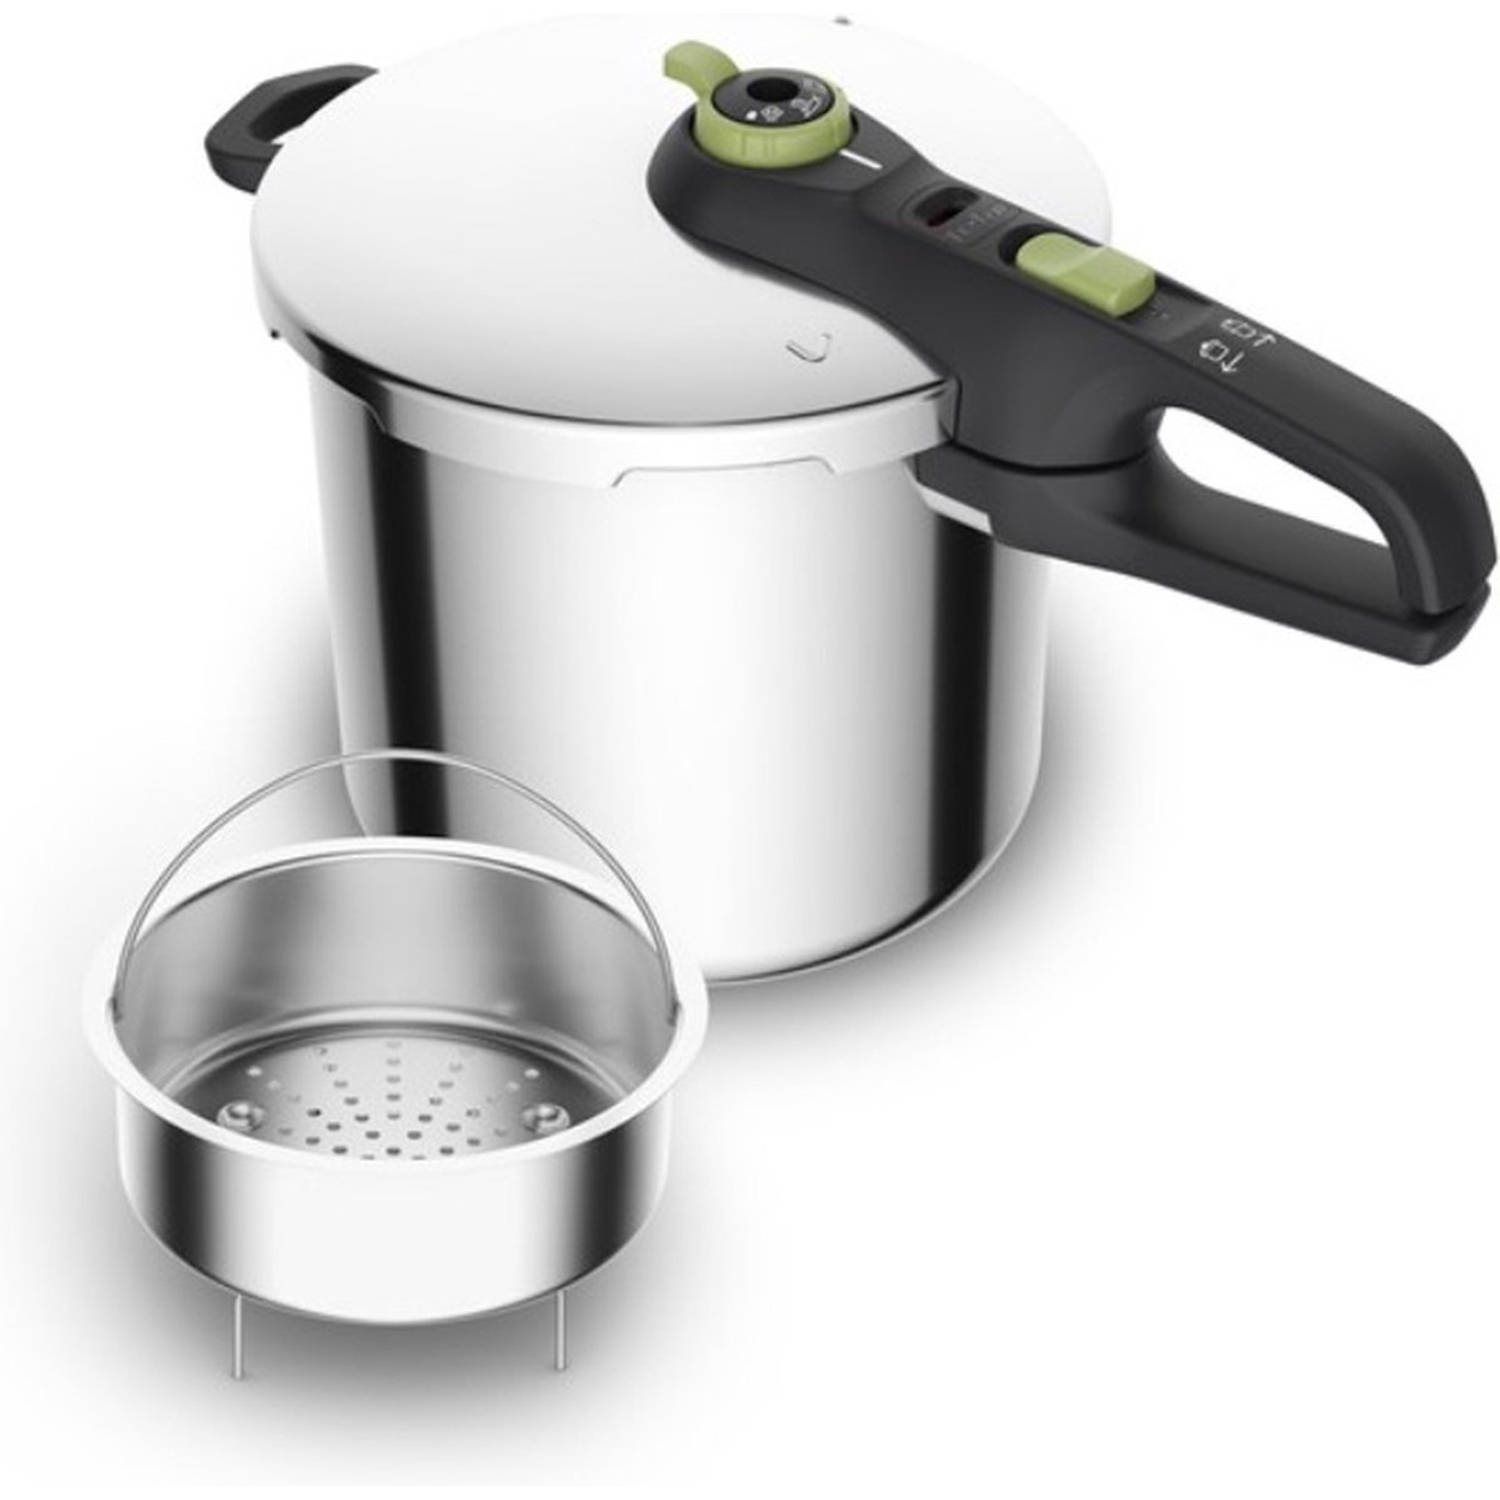 Tefal Snelkookpan met Stoommandje 8 liter Pressure Cooker Geschikt voor alle warmtebronnen RVS